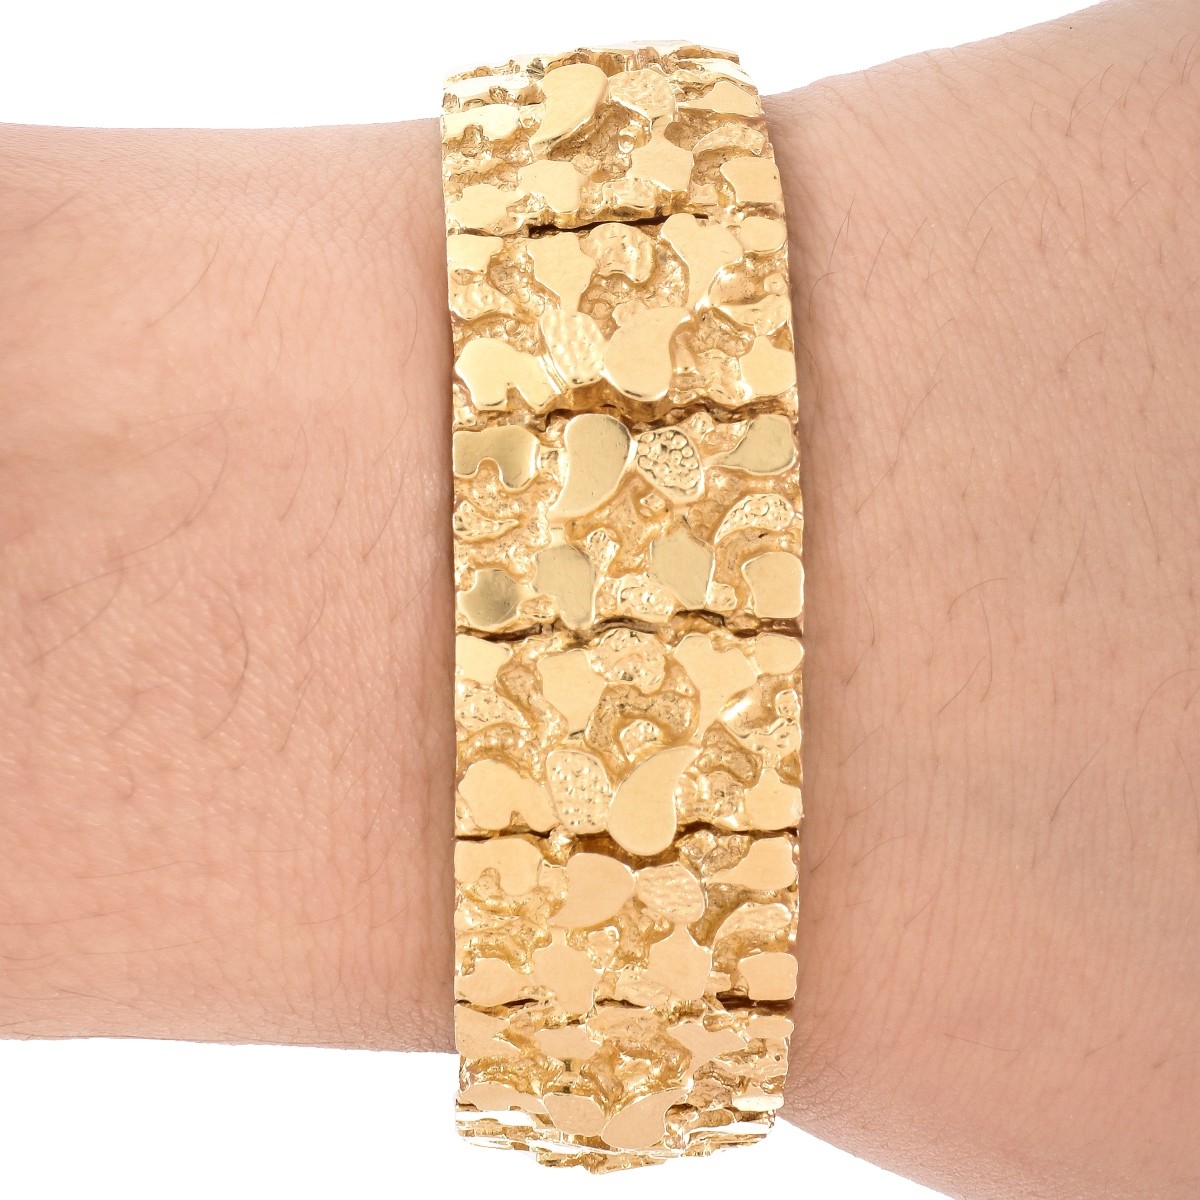 Man's 14K Gold Nugget Bracelet